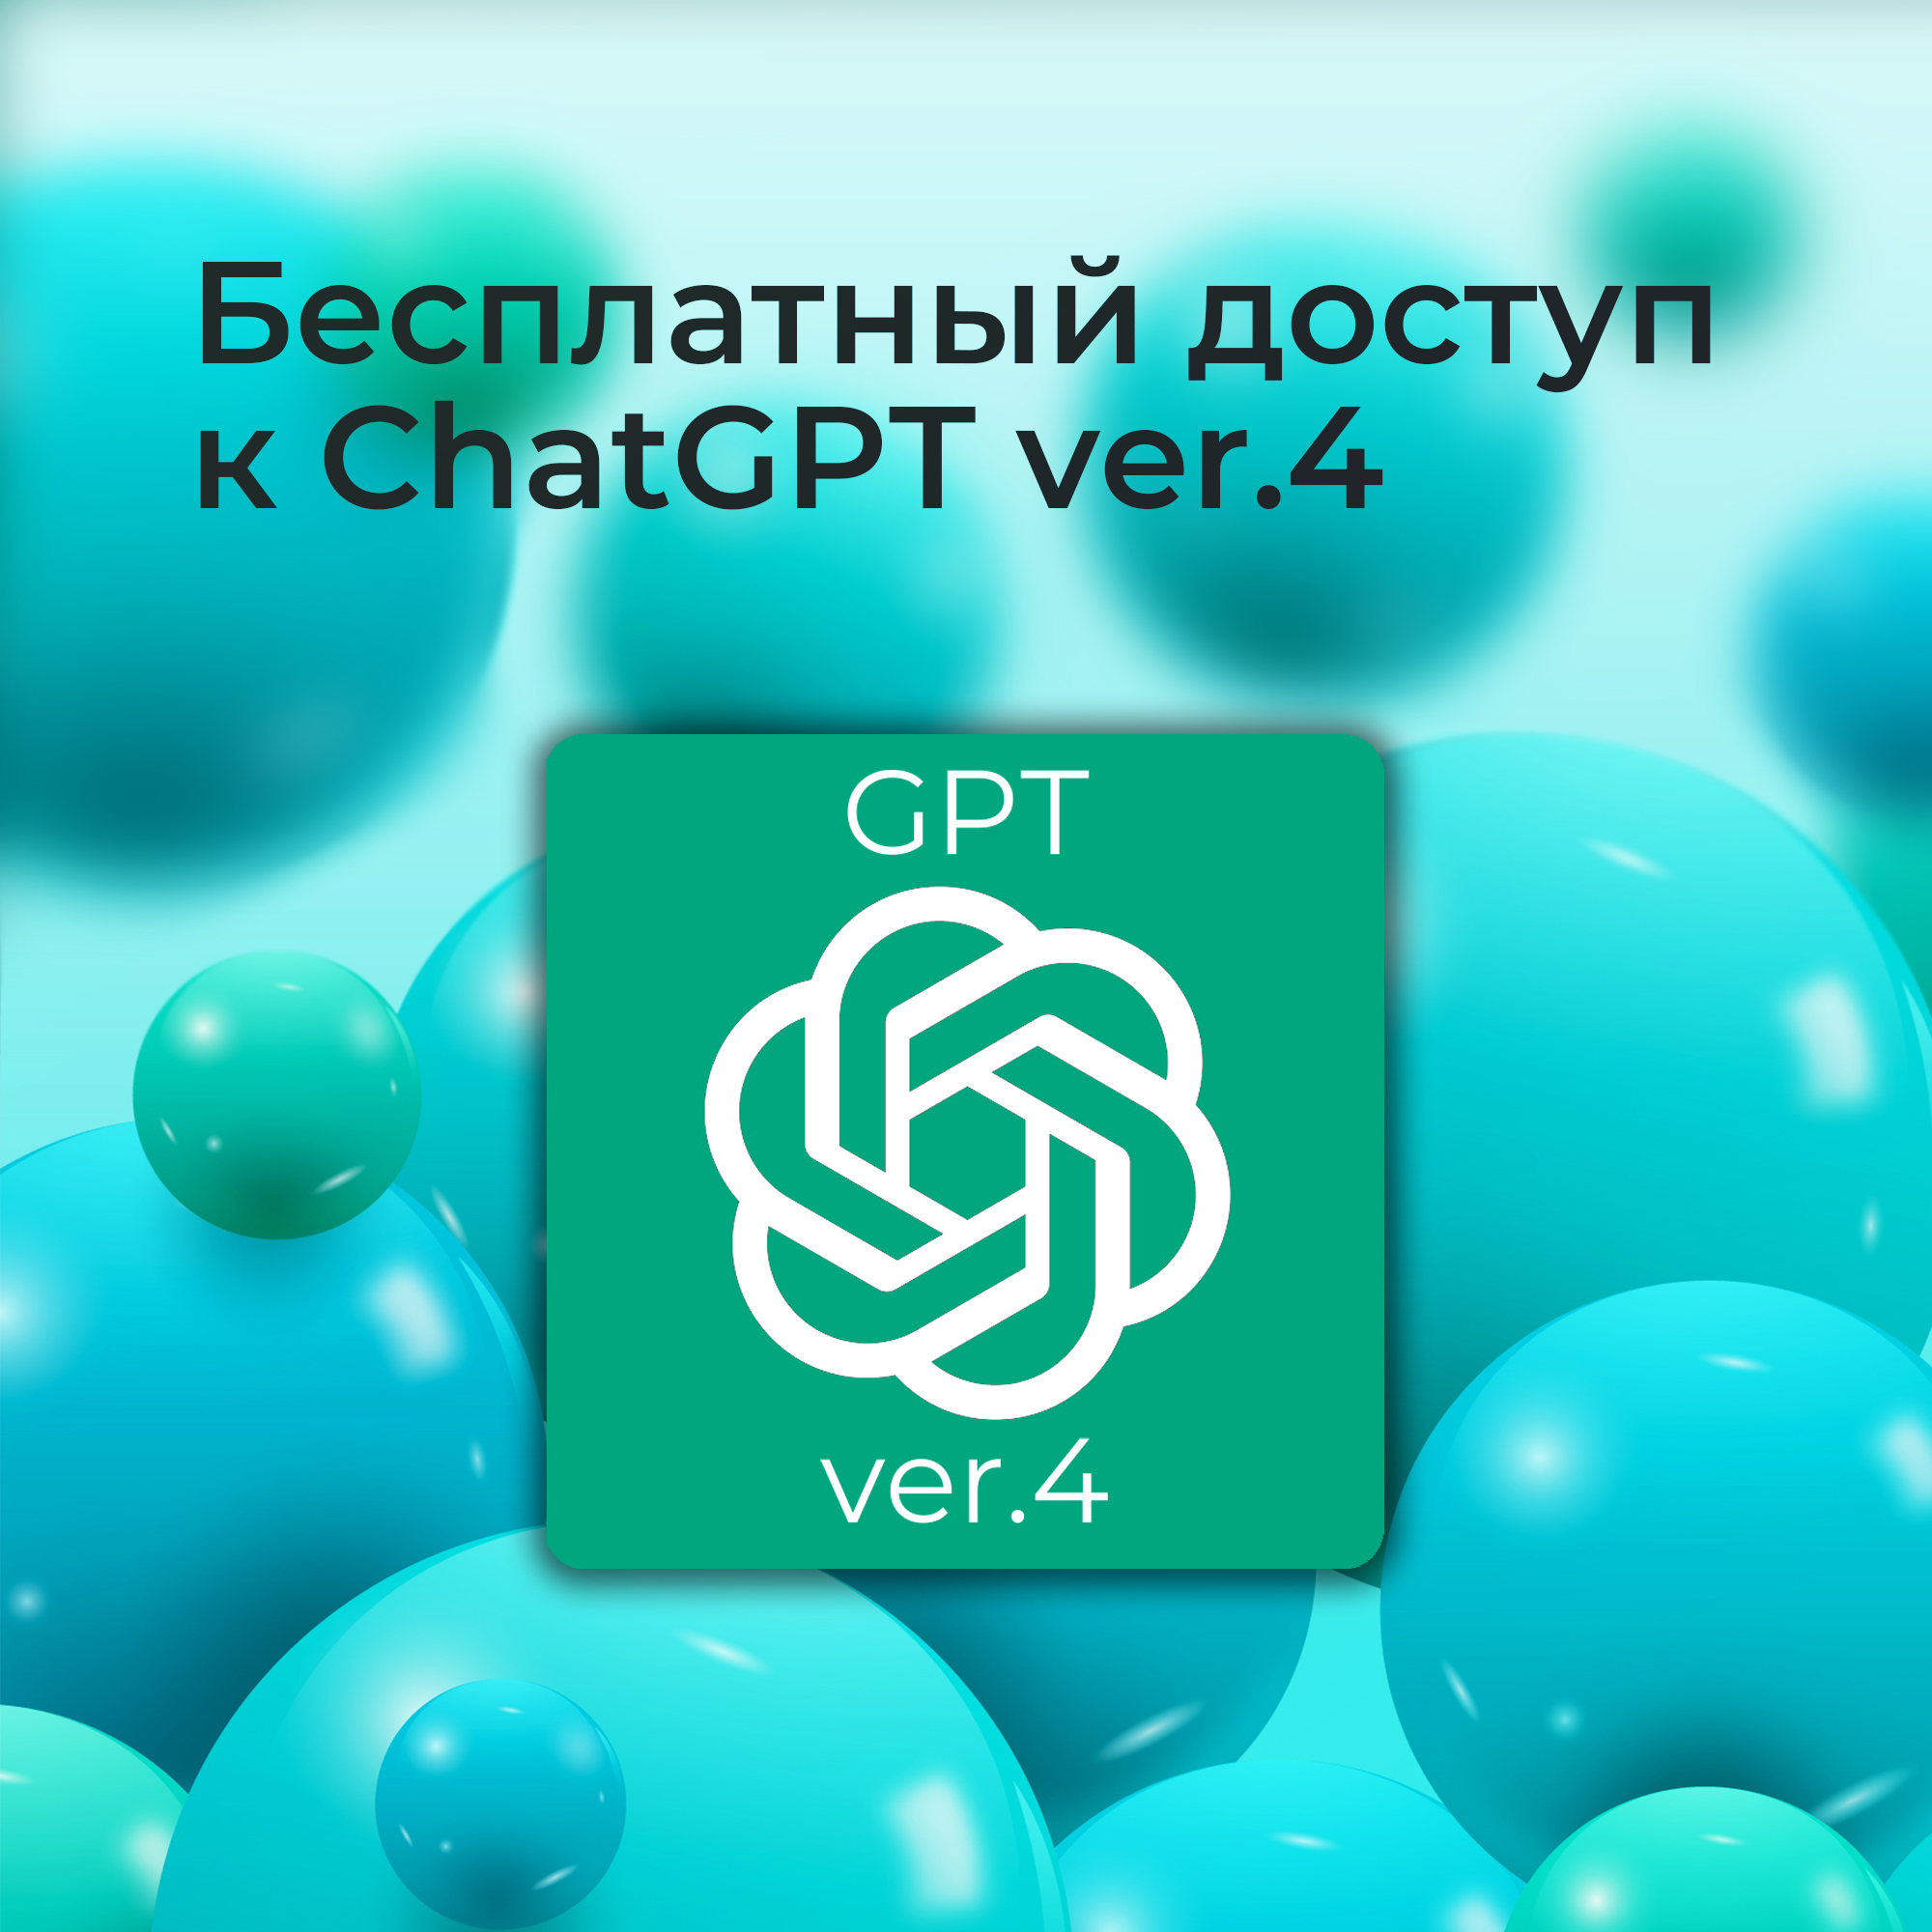 Бесплатный доступ к ChatGPT4. Подробная инструкция.